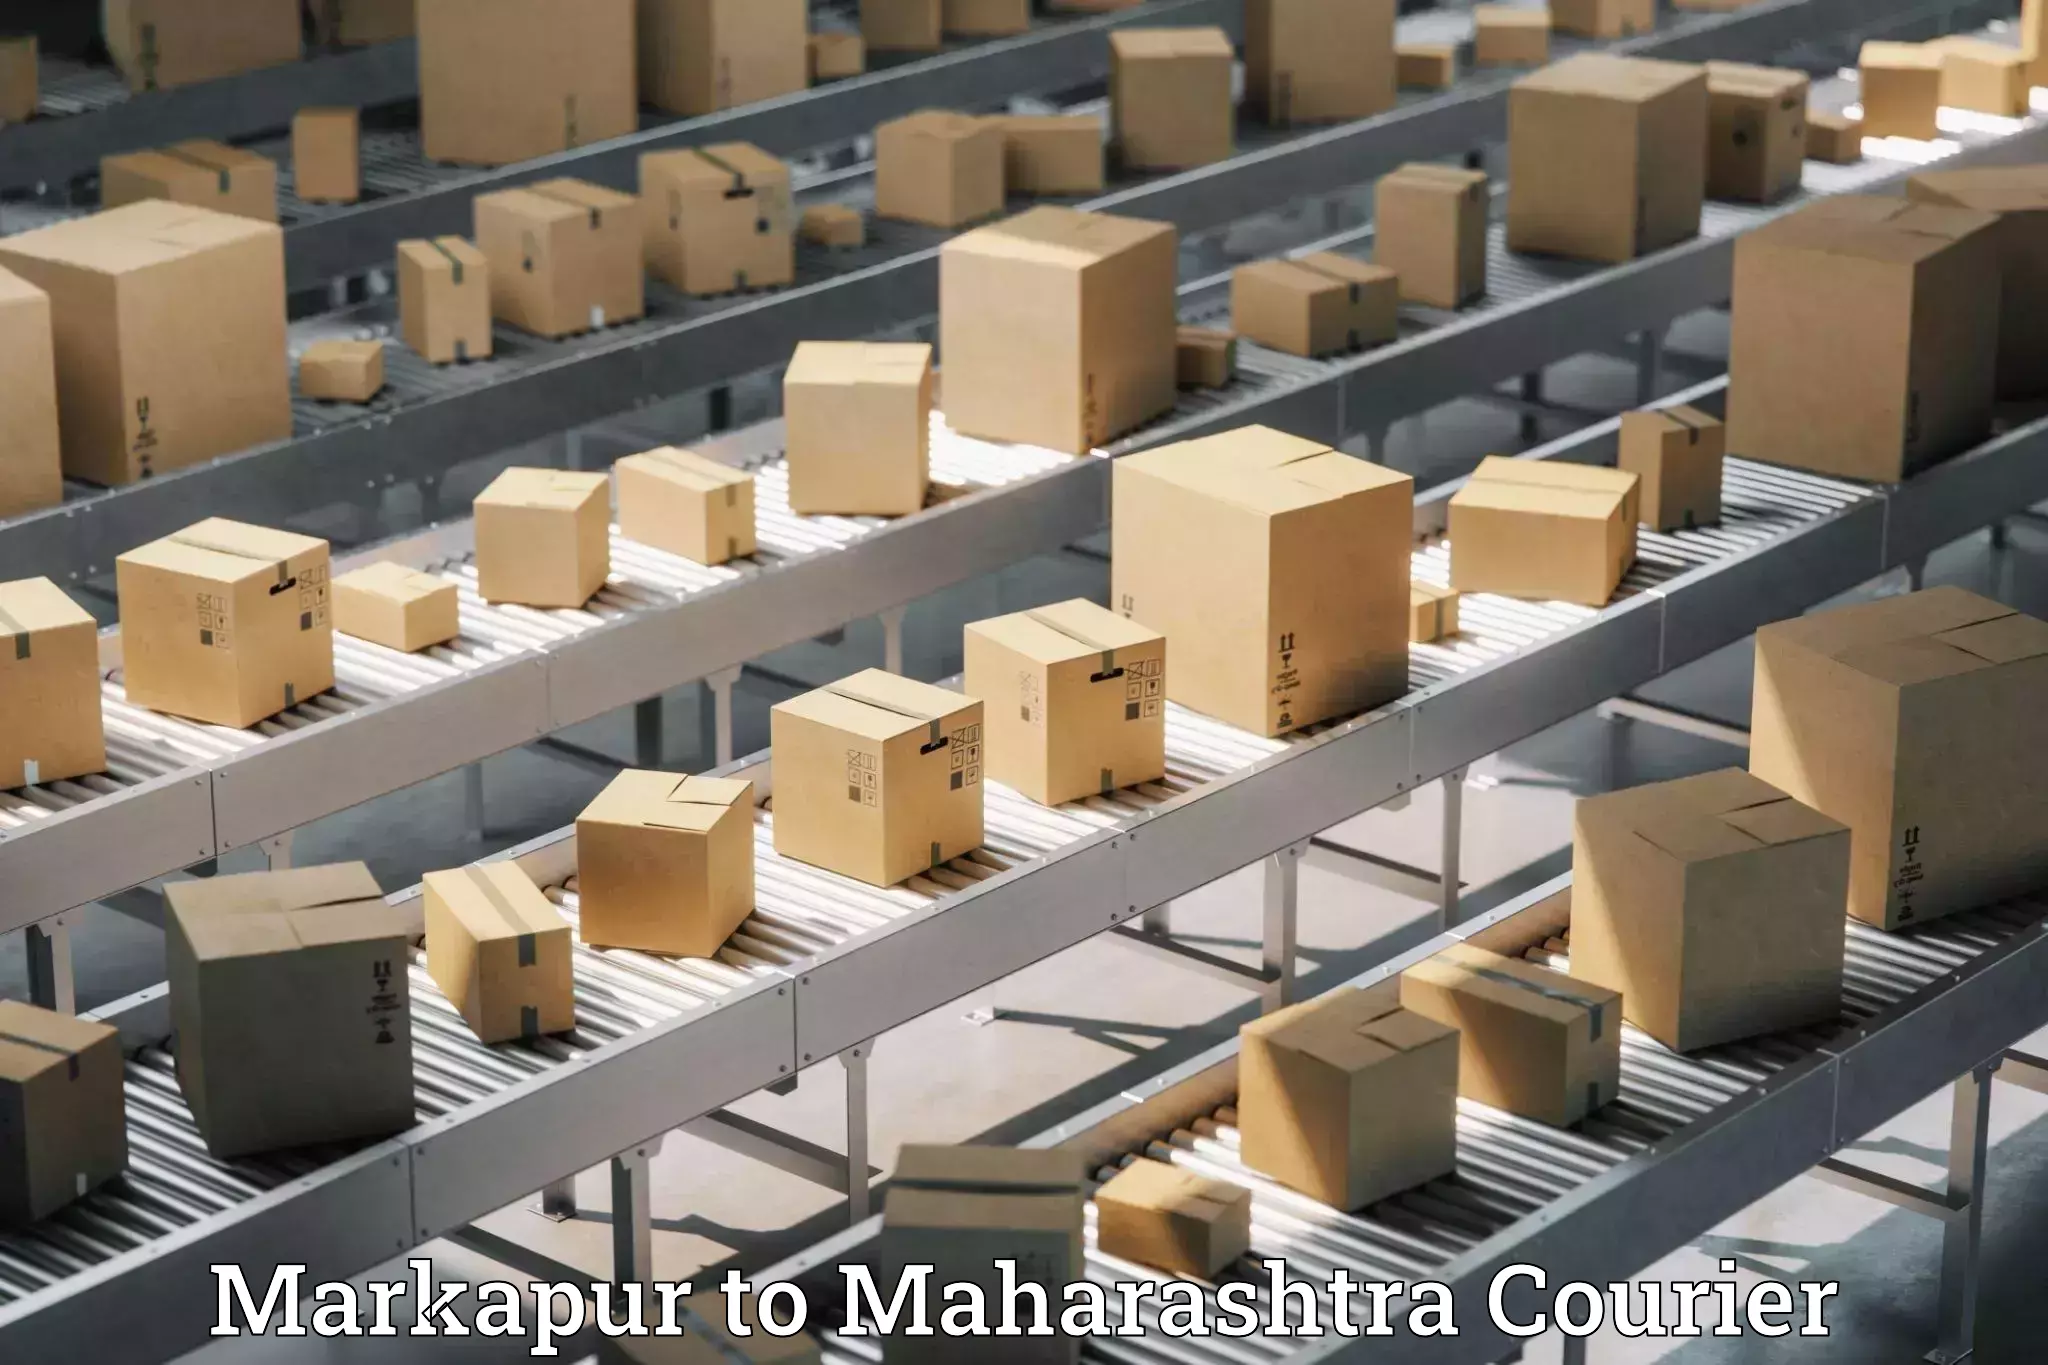 Customer-centric shipping Markapur to Maharashtra